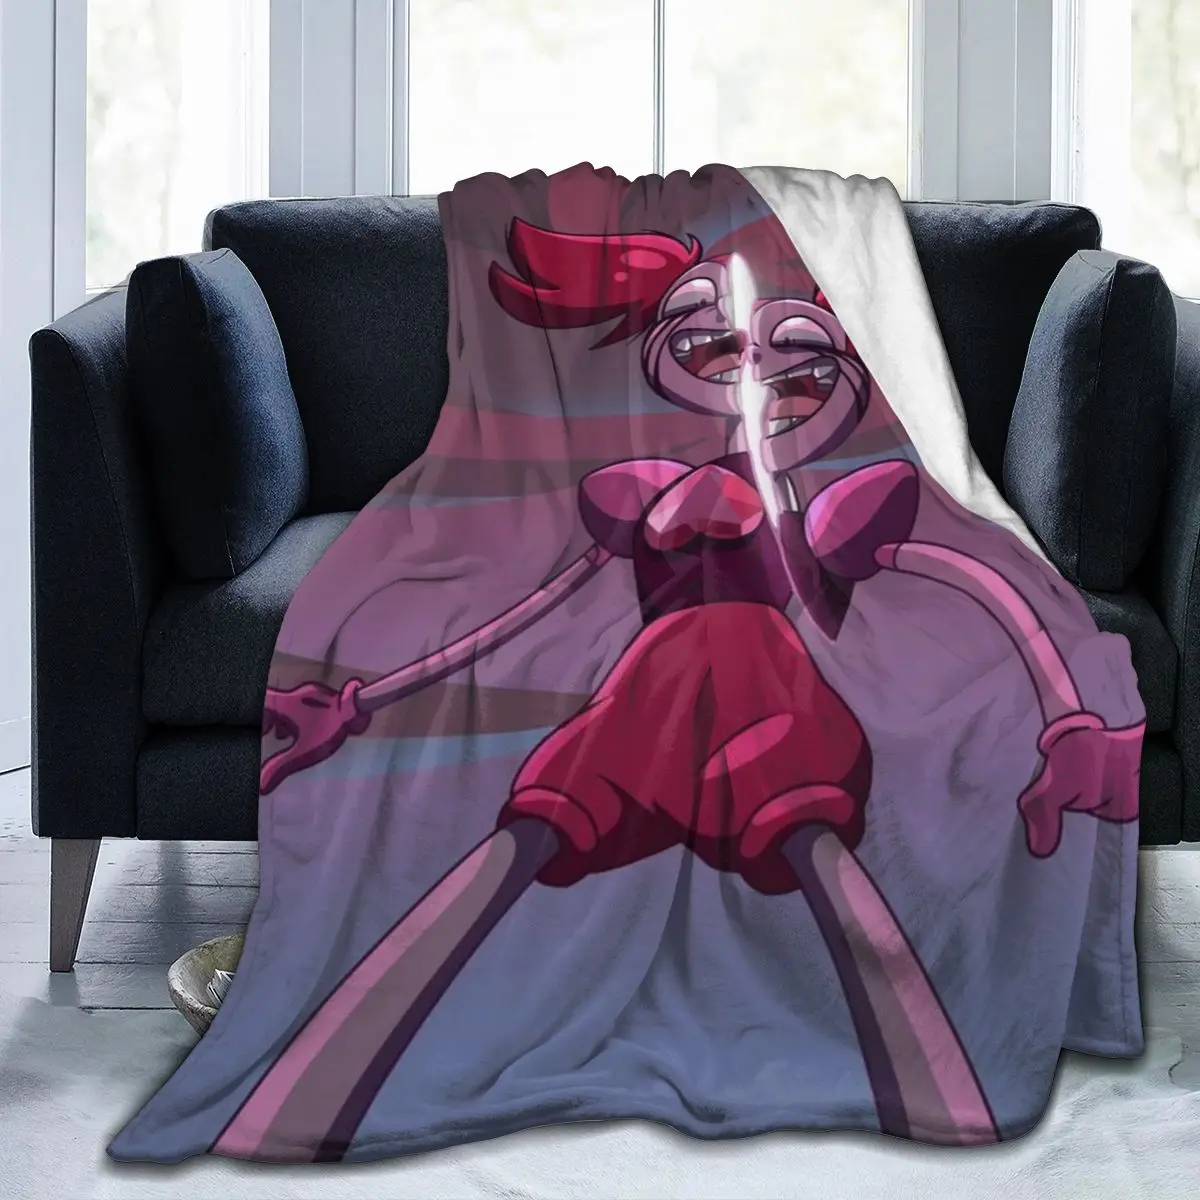 

Плюшевое одеяло Steven Universe с 3D-принтом из аниме, покрывало, винтажное постельное белье, квадратное мягкое одеяло для пикника